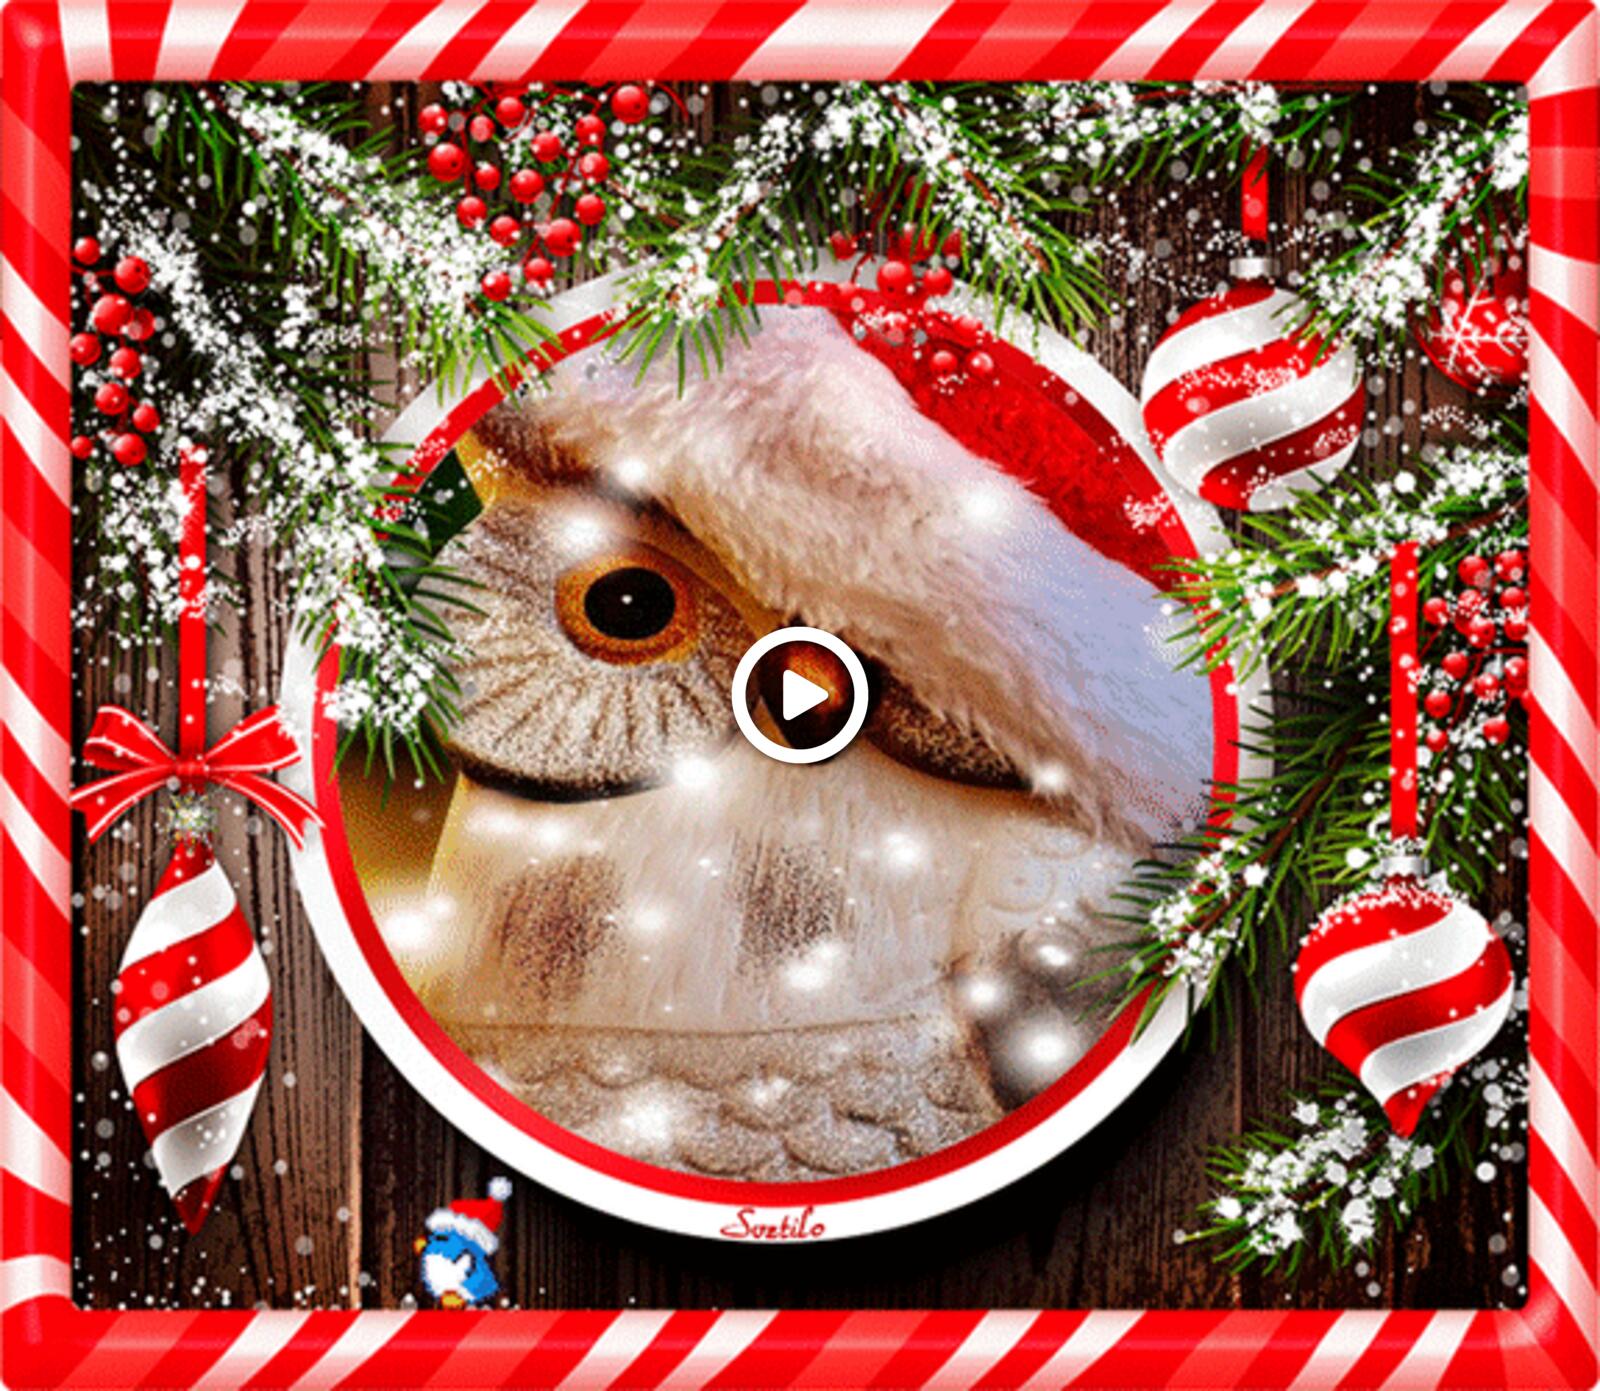 一张以鸱枭 圣诞树装饰 12月的高保真GIF为主题的明信片